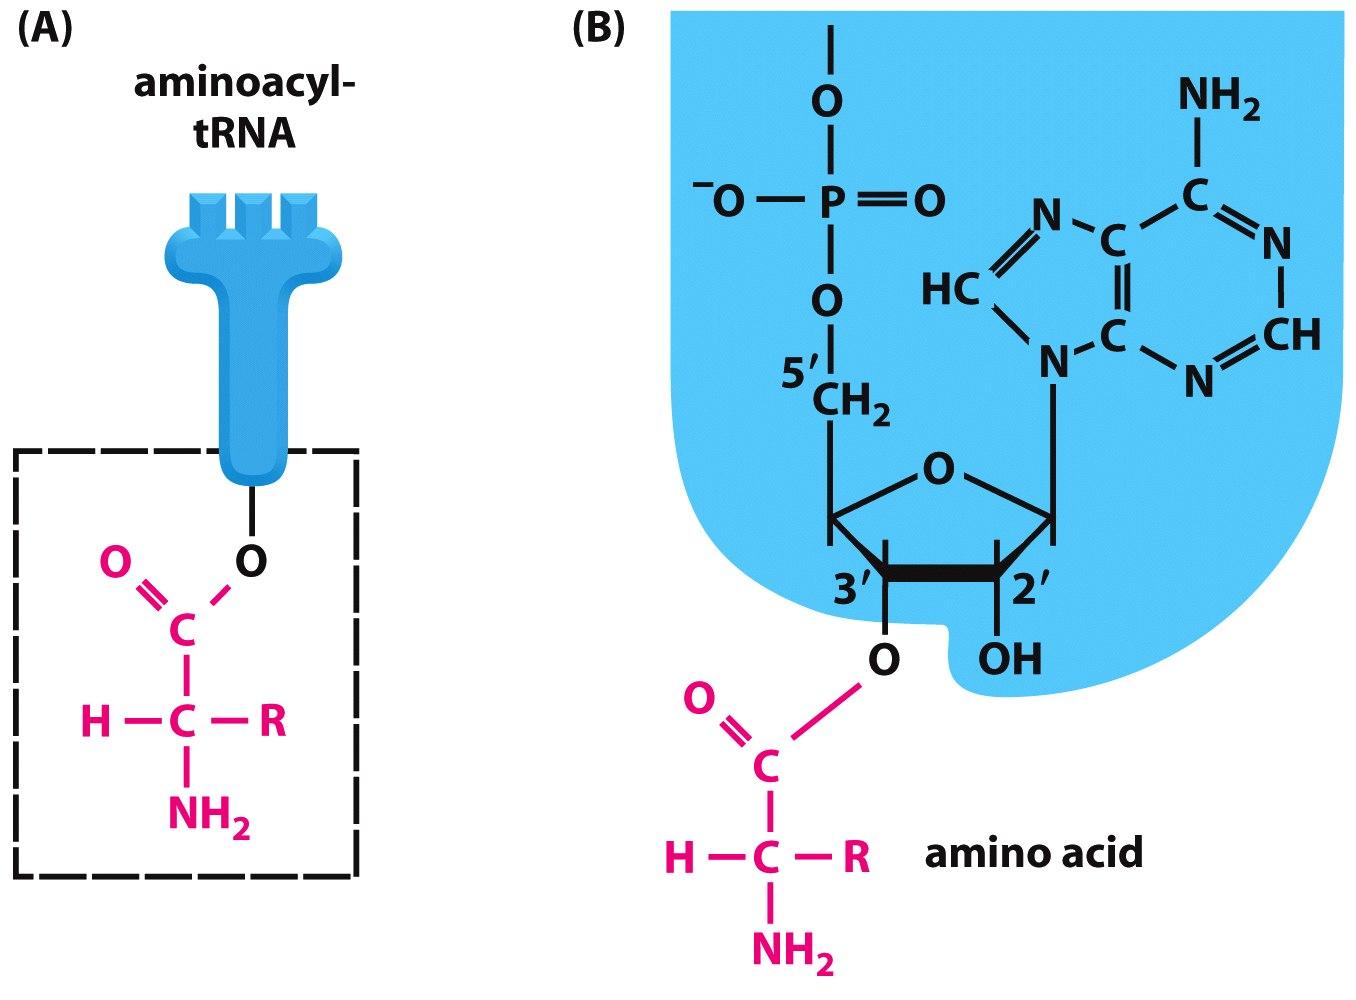 Cómo está unido el aminoácido al trna?